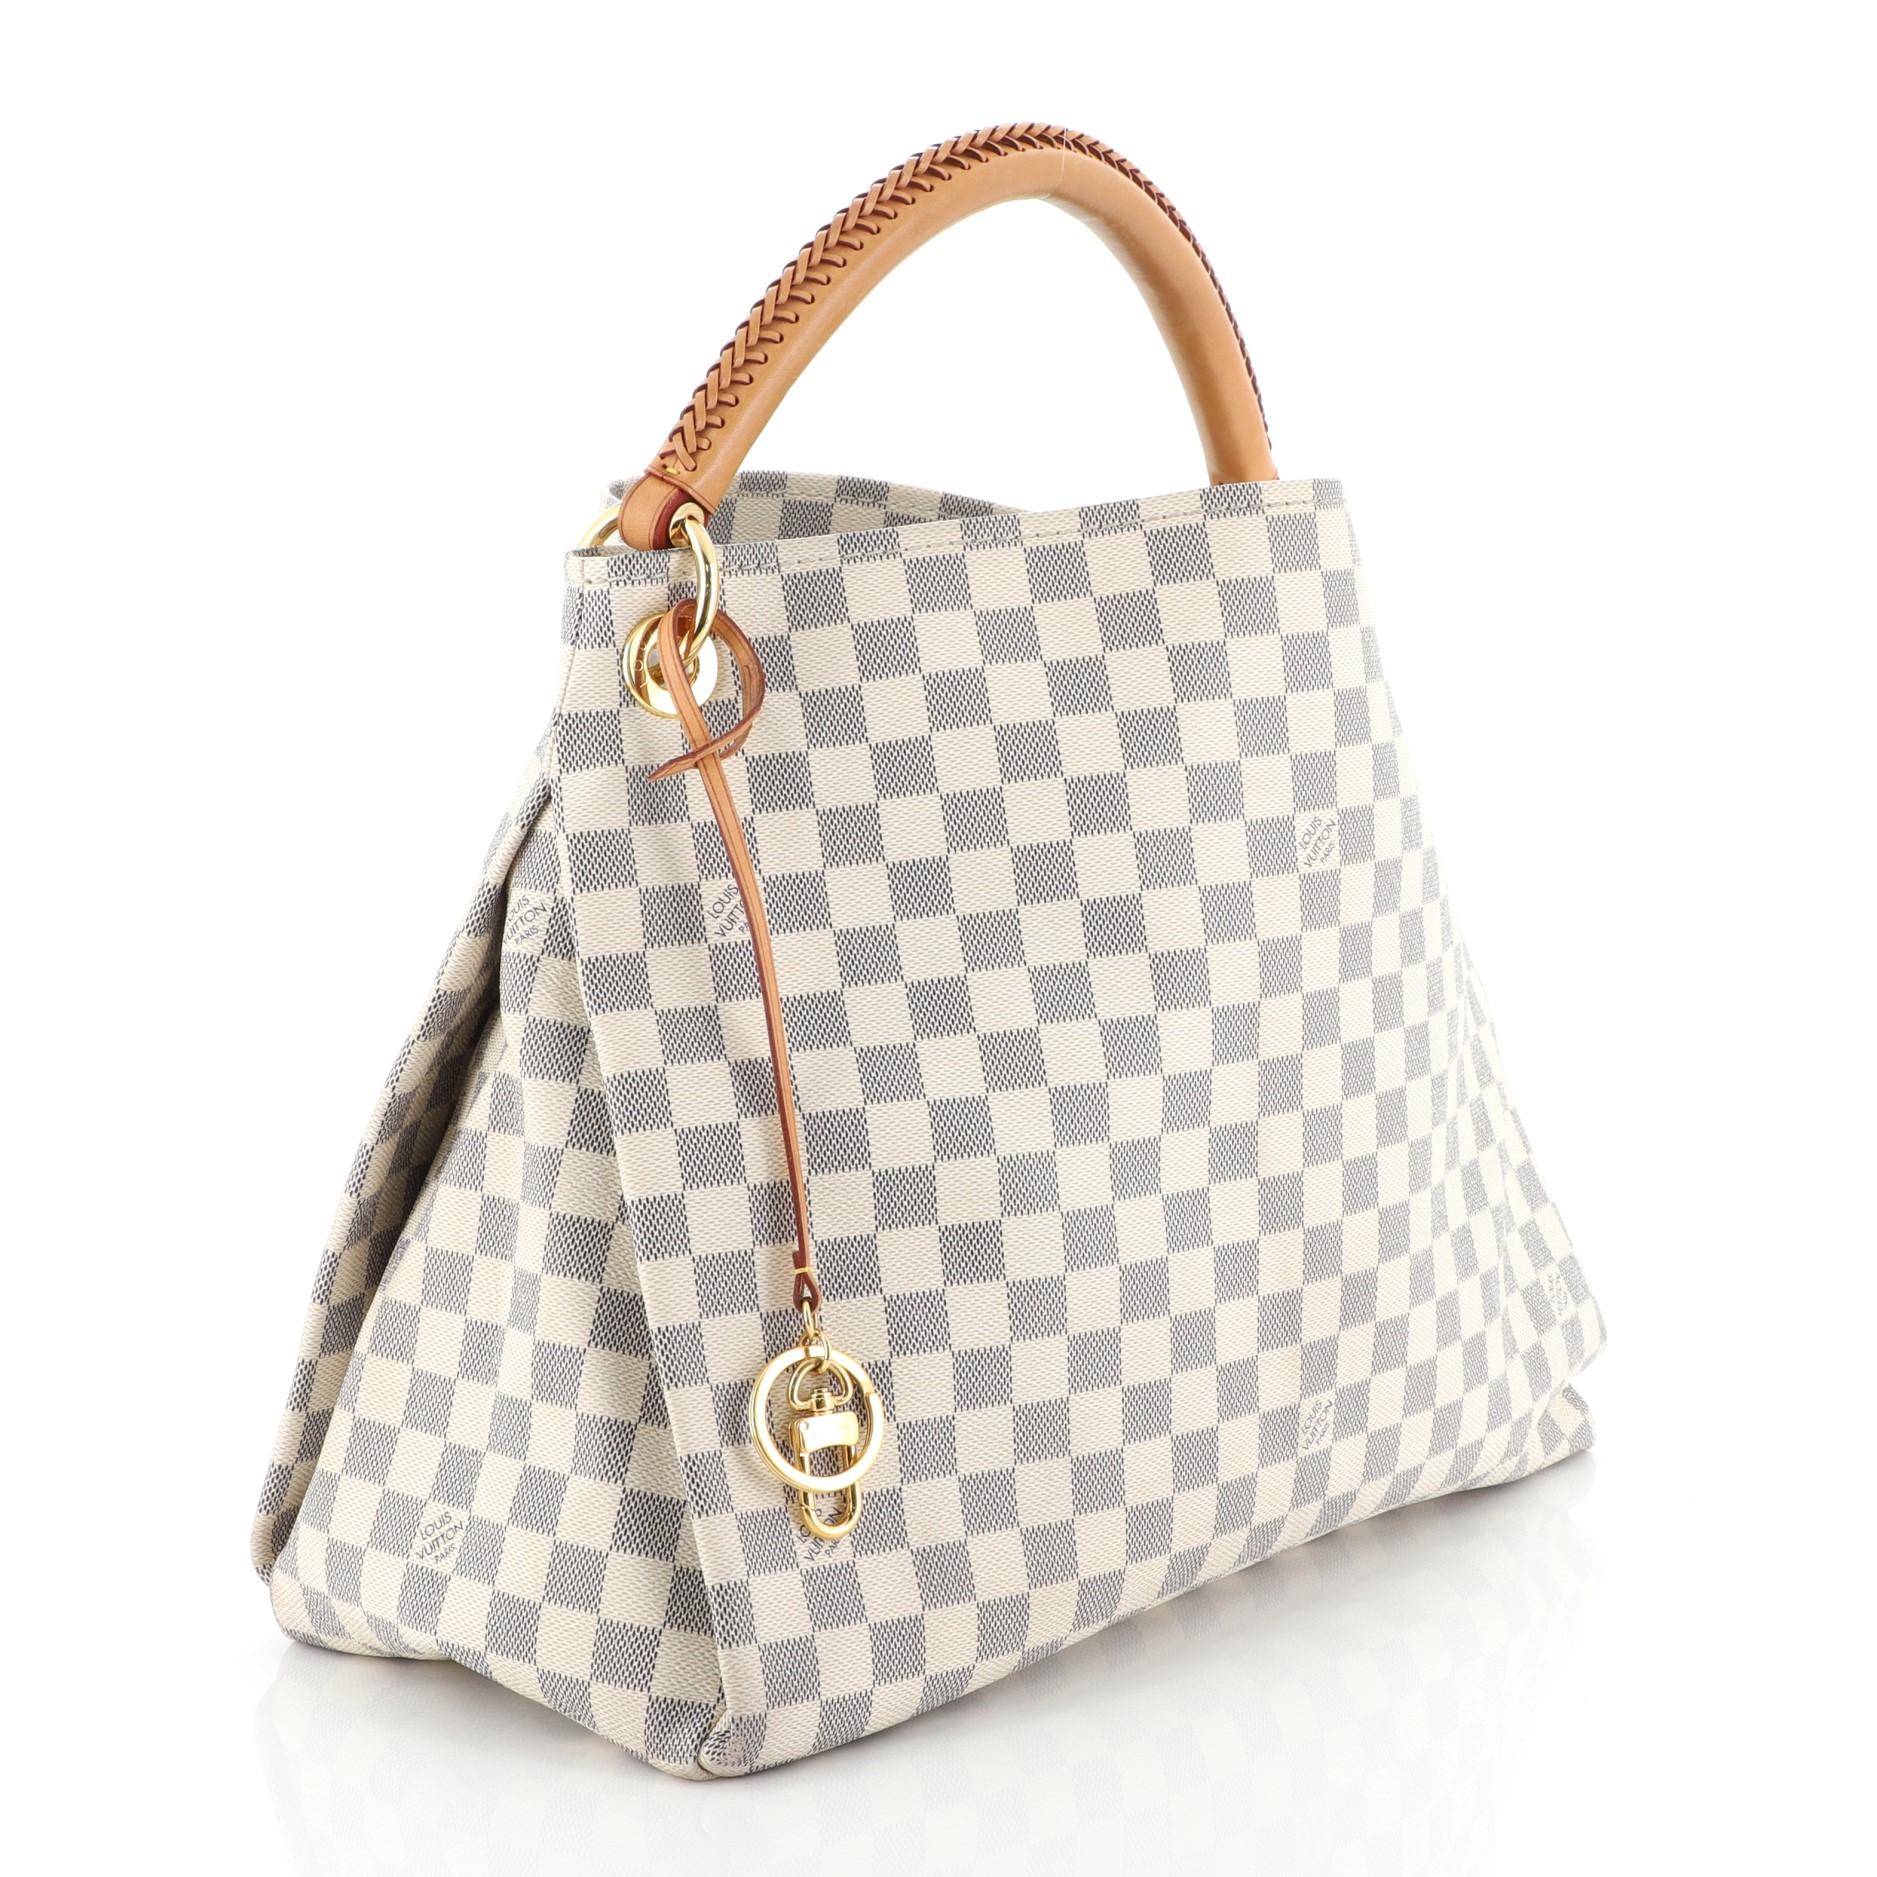 Beige Louis Vuitton Artsy Handbag